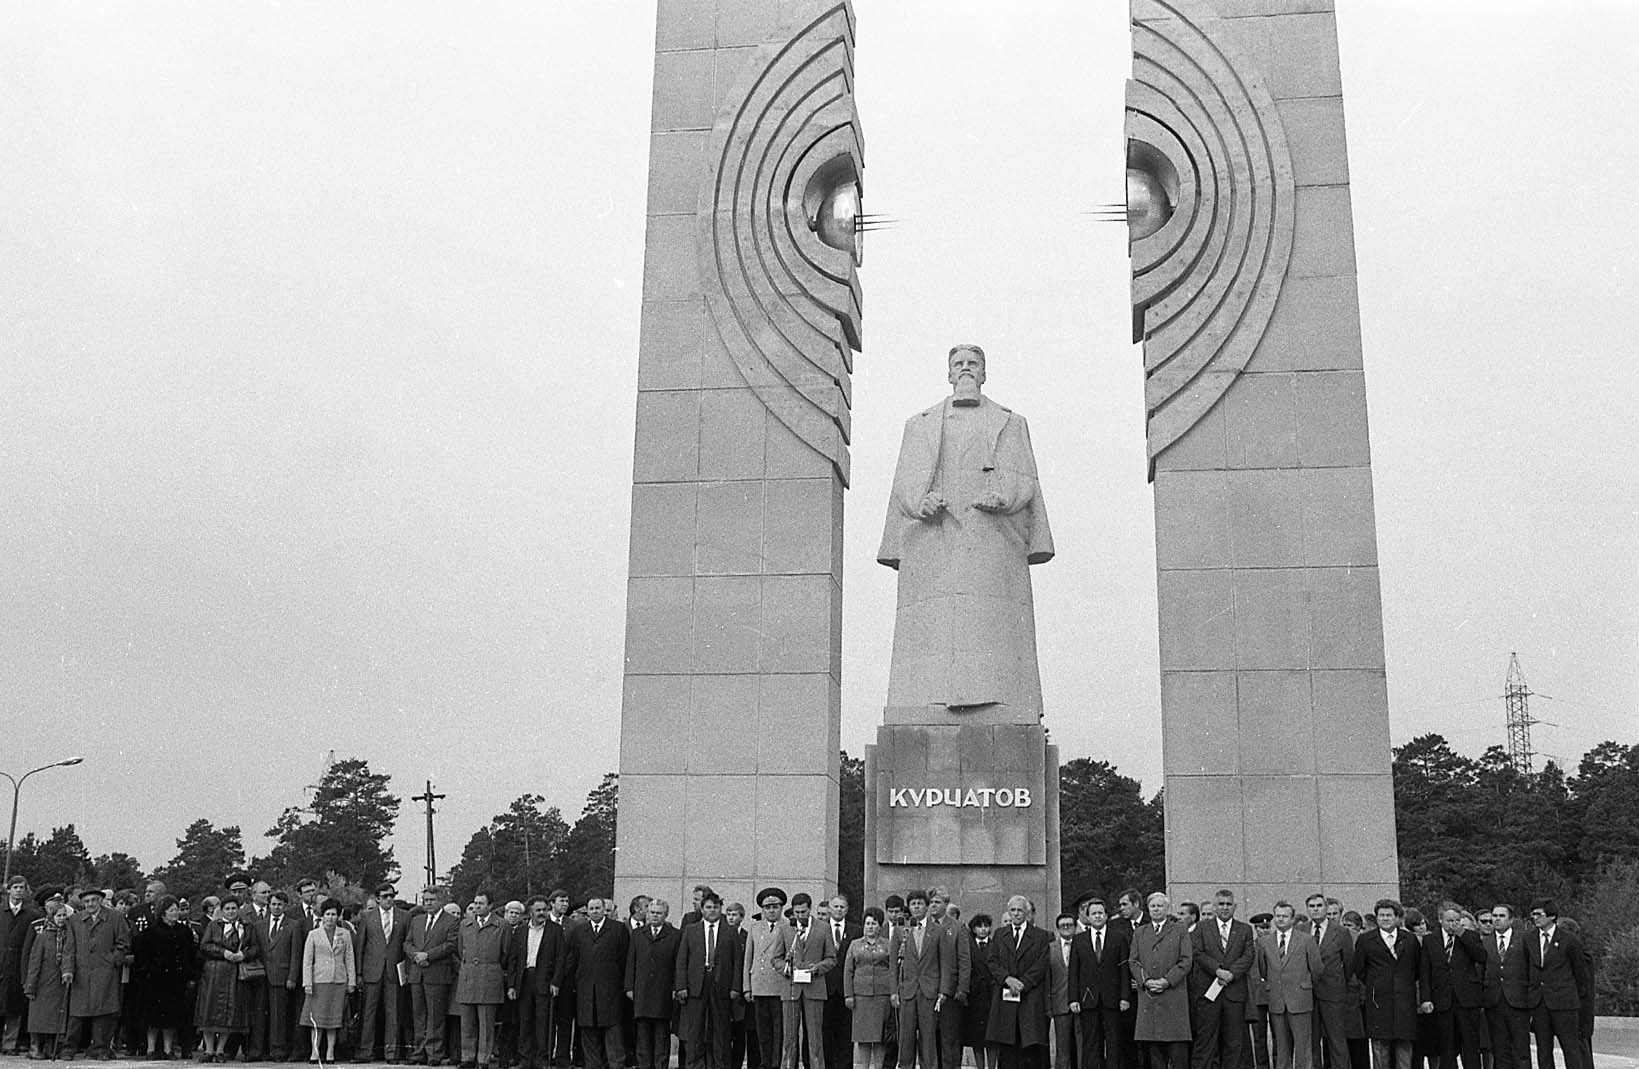 Памятник Игорю Курчатову открыт в 1986 году к 250-летию Челябинска, заказ поступил от челябинского горисполкома, председателем которого в то время был Петр Сумин